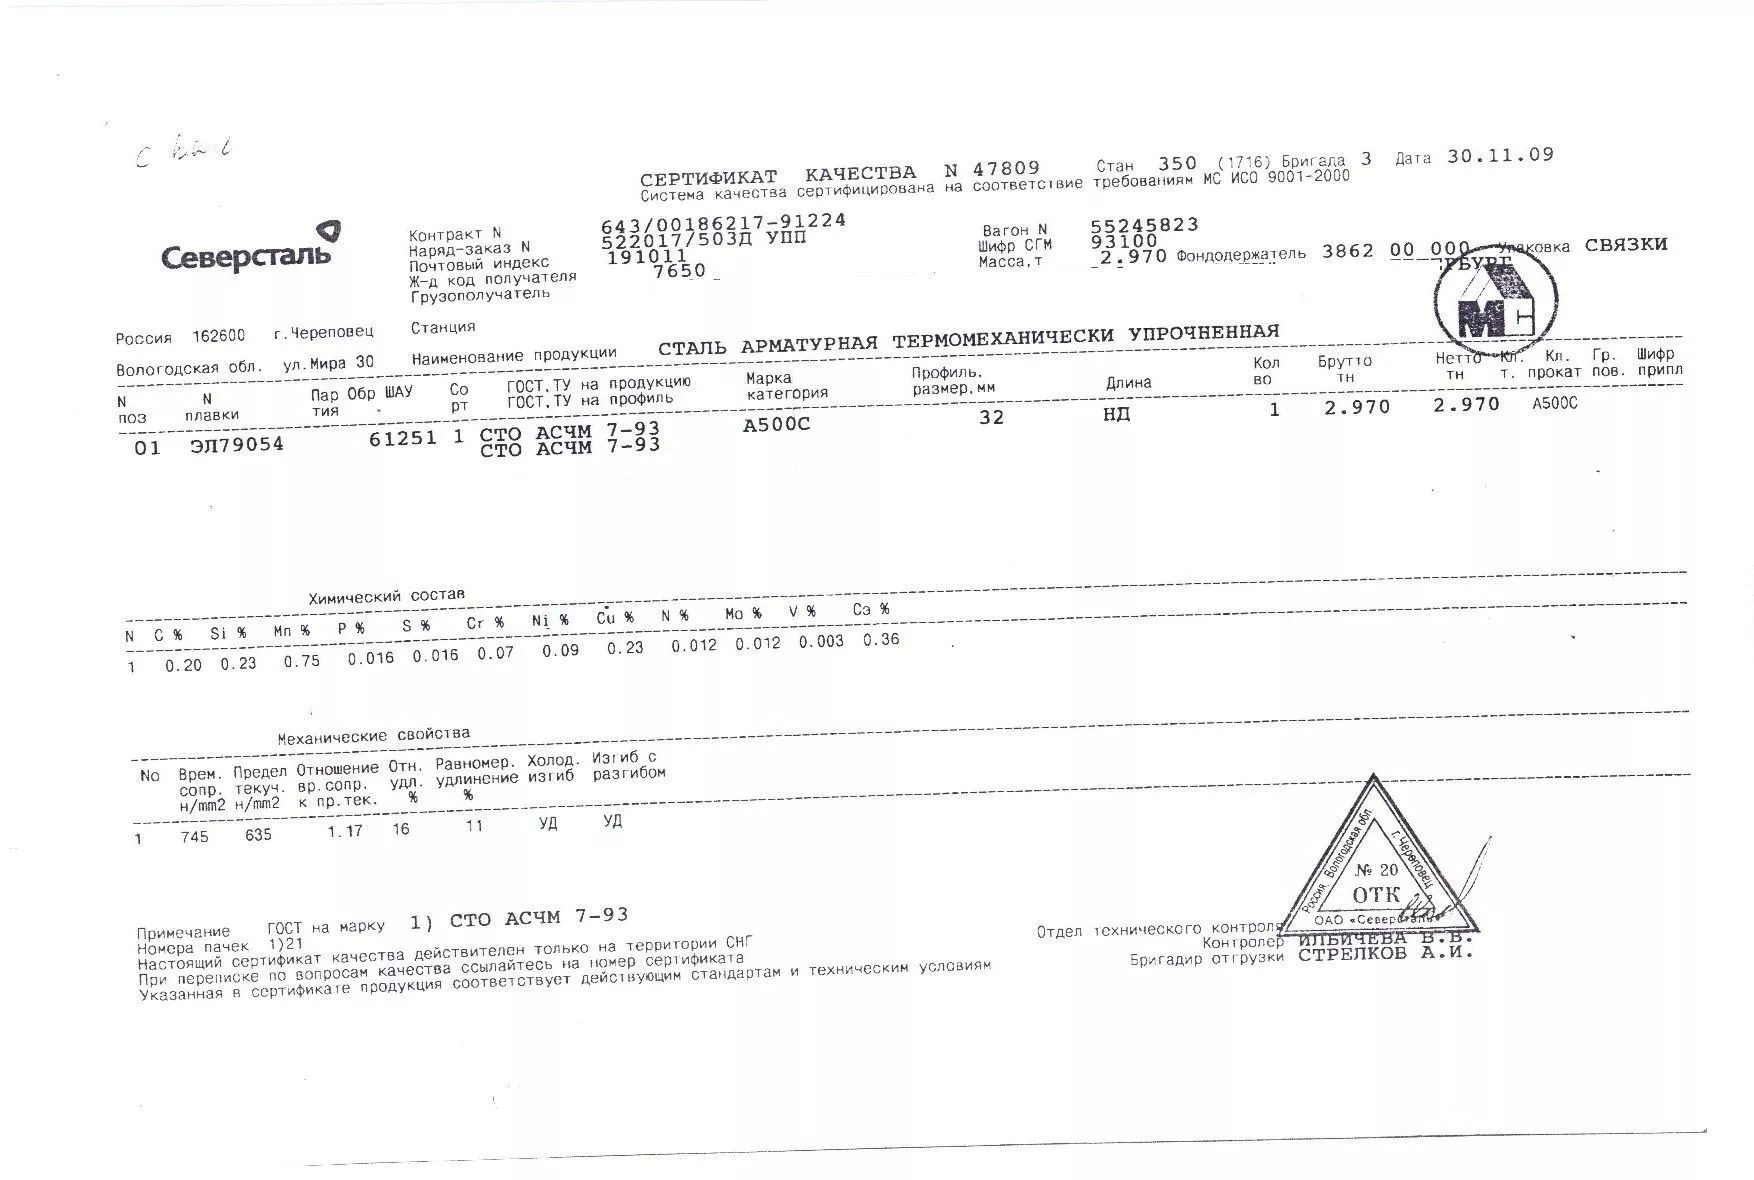 Сертификат на арматуру (класса А3) 32 (А500С) от 2009-11